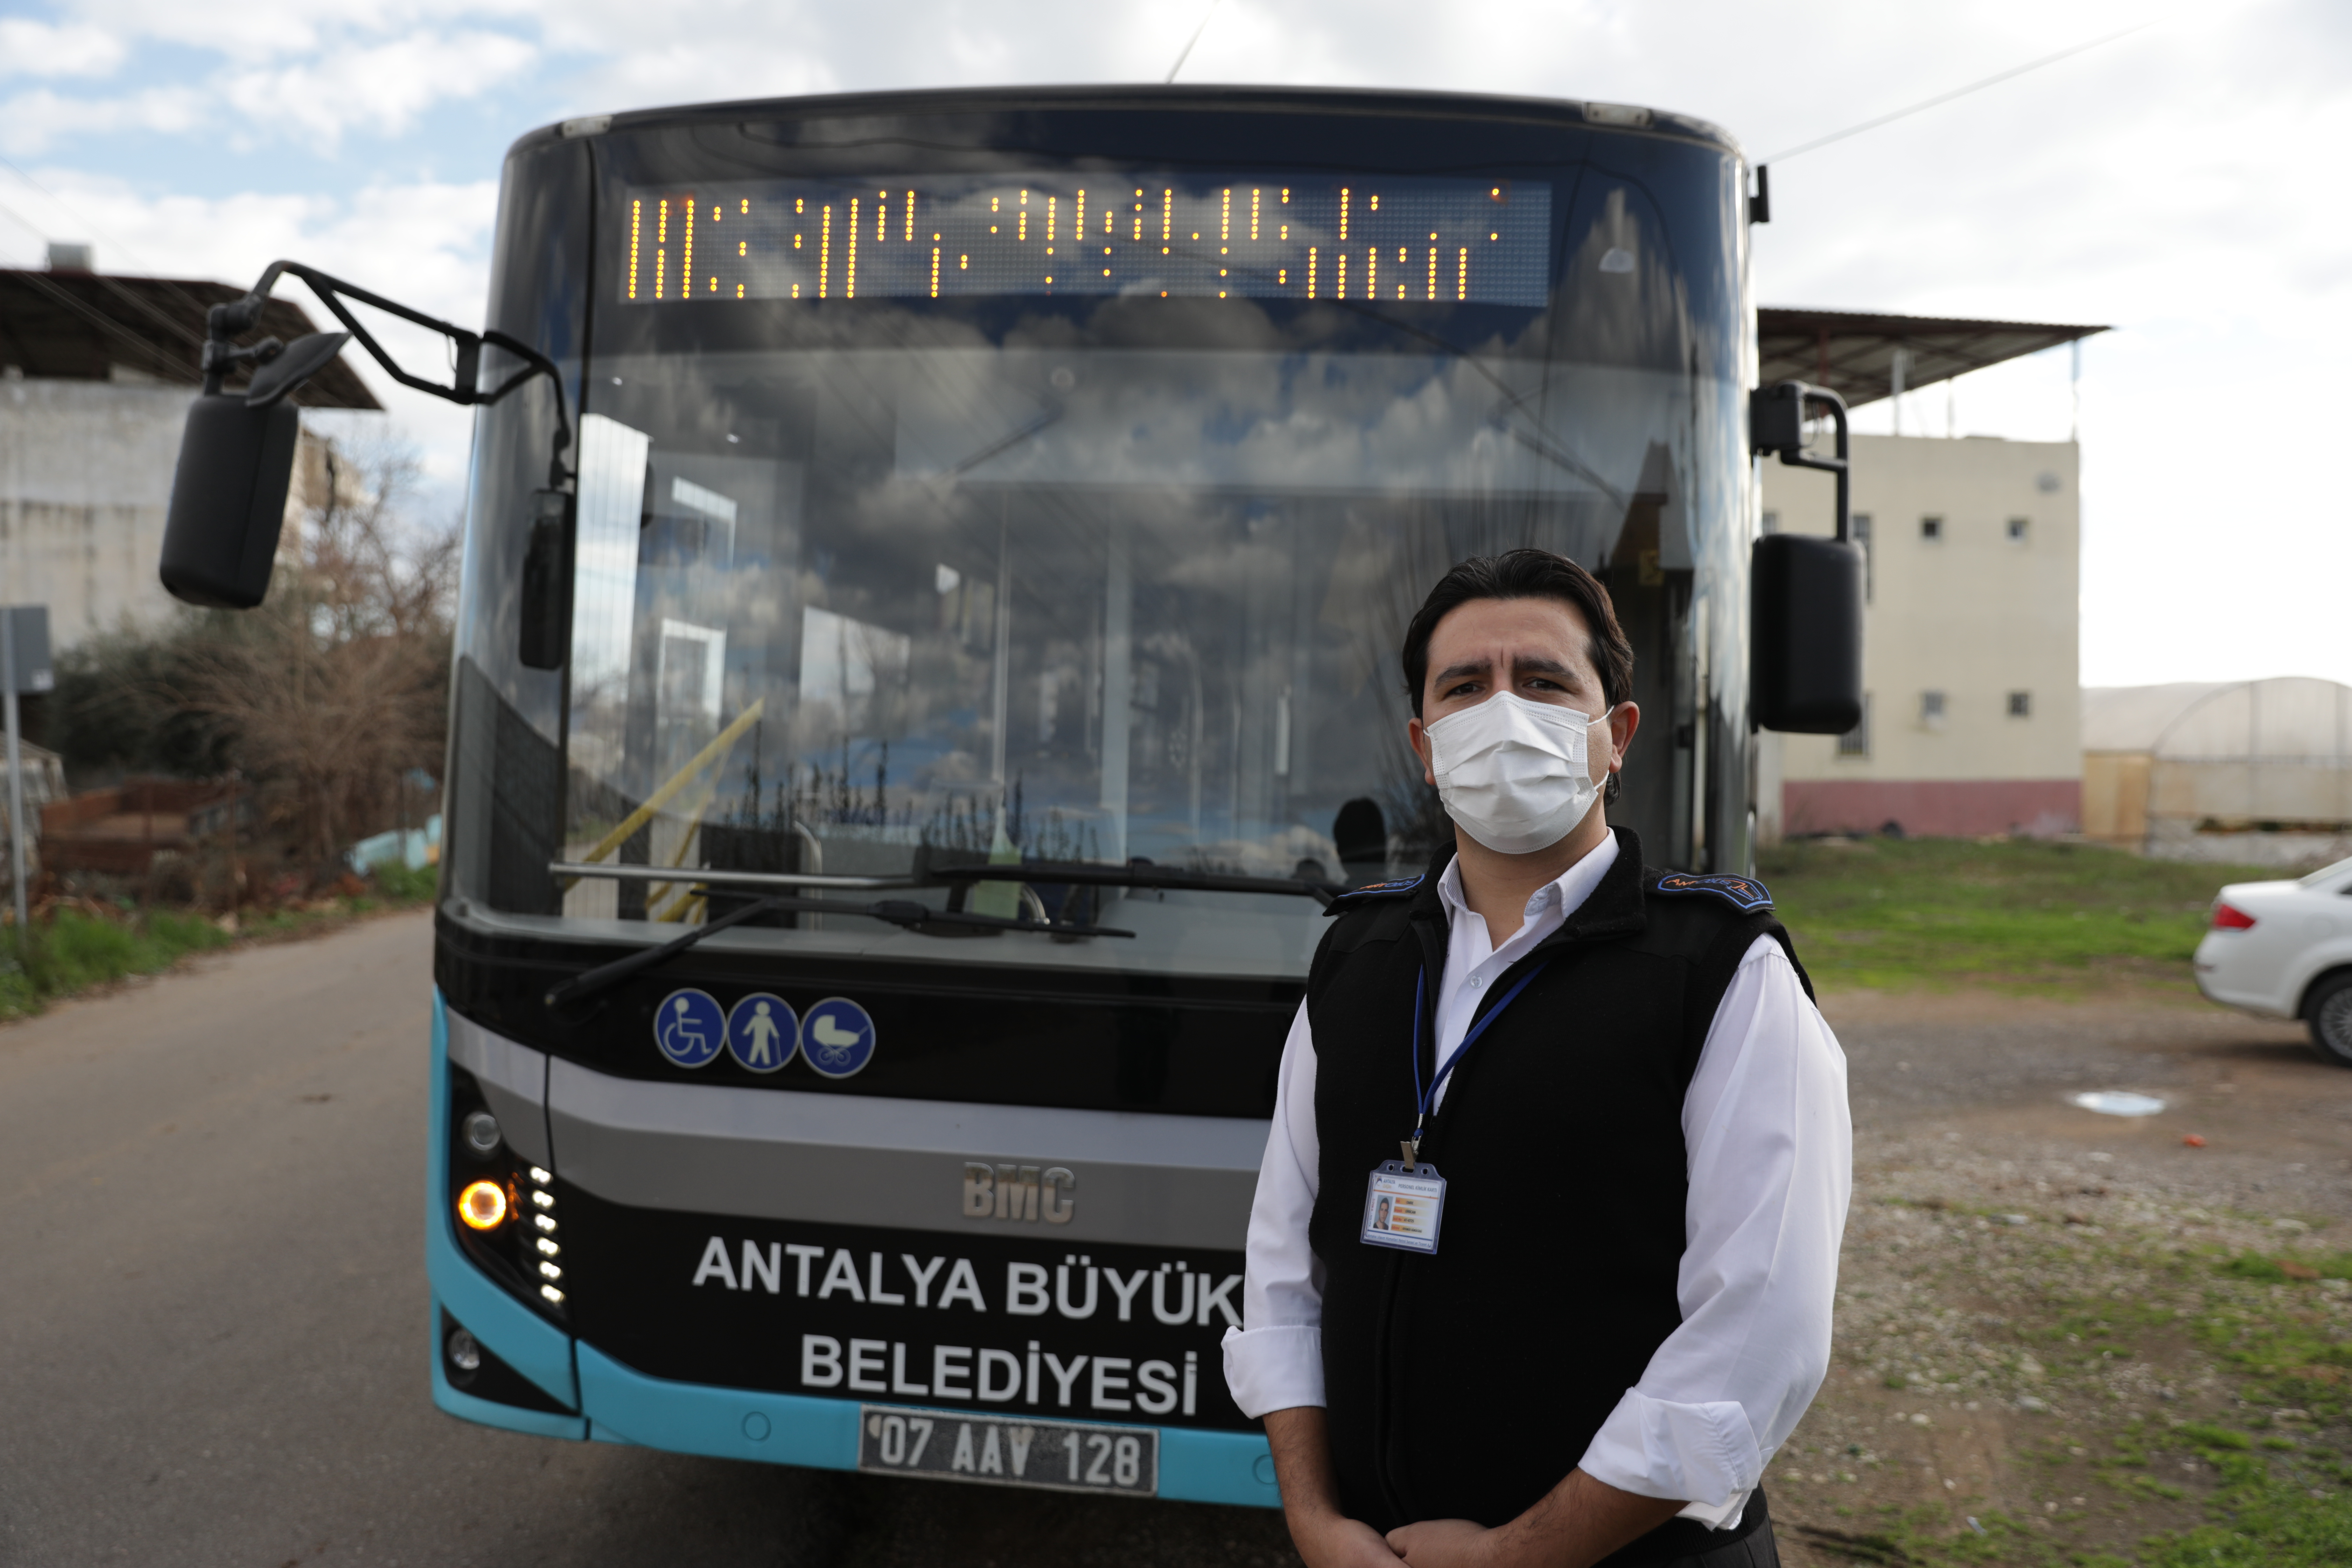 Antalya Büyükşehir Belediyesi’ne ait